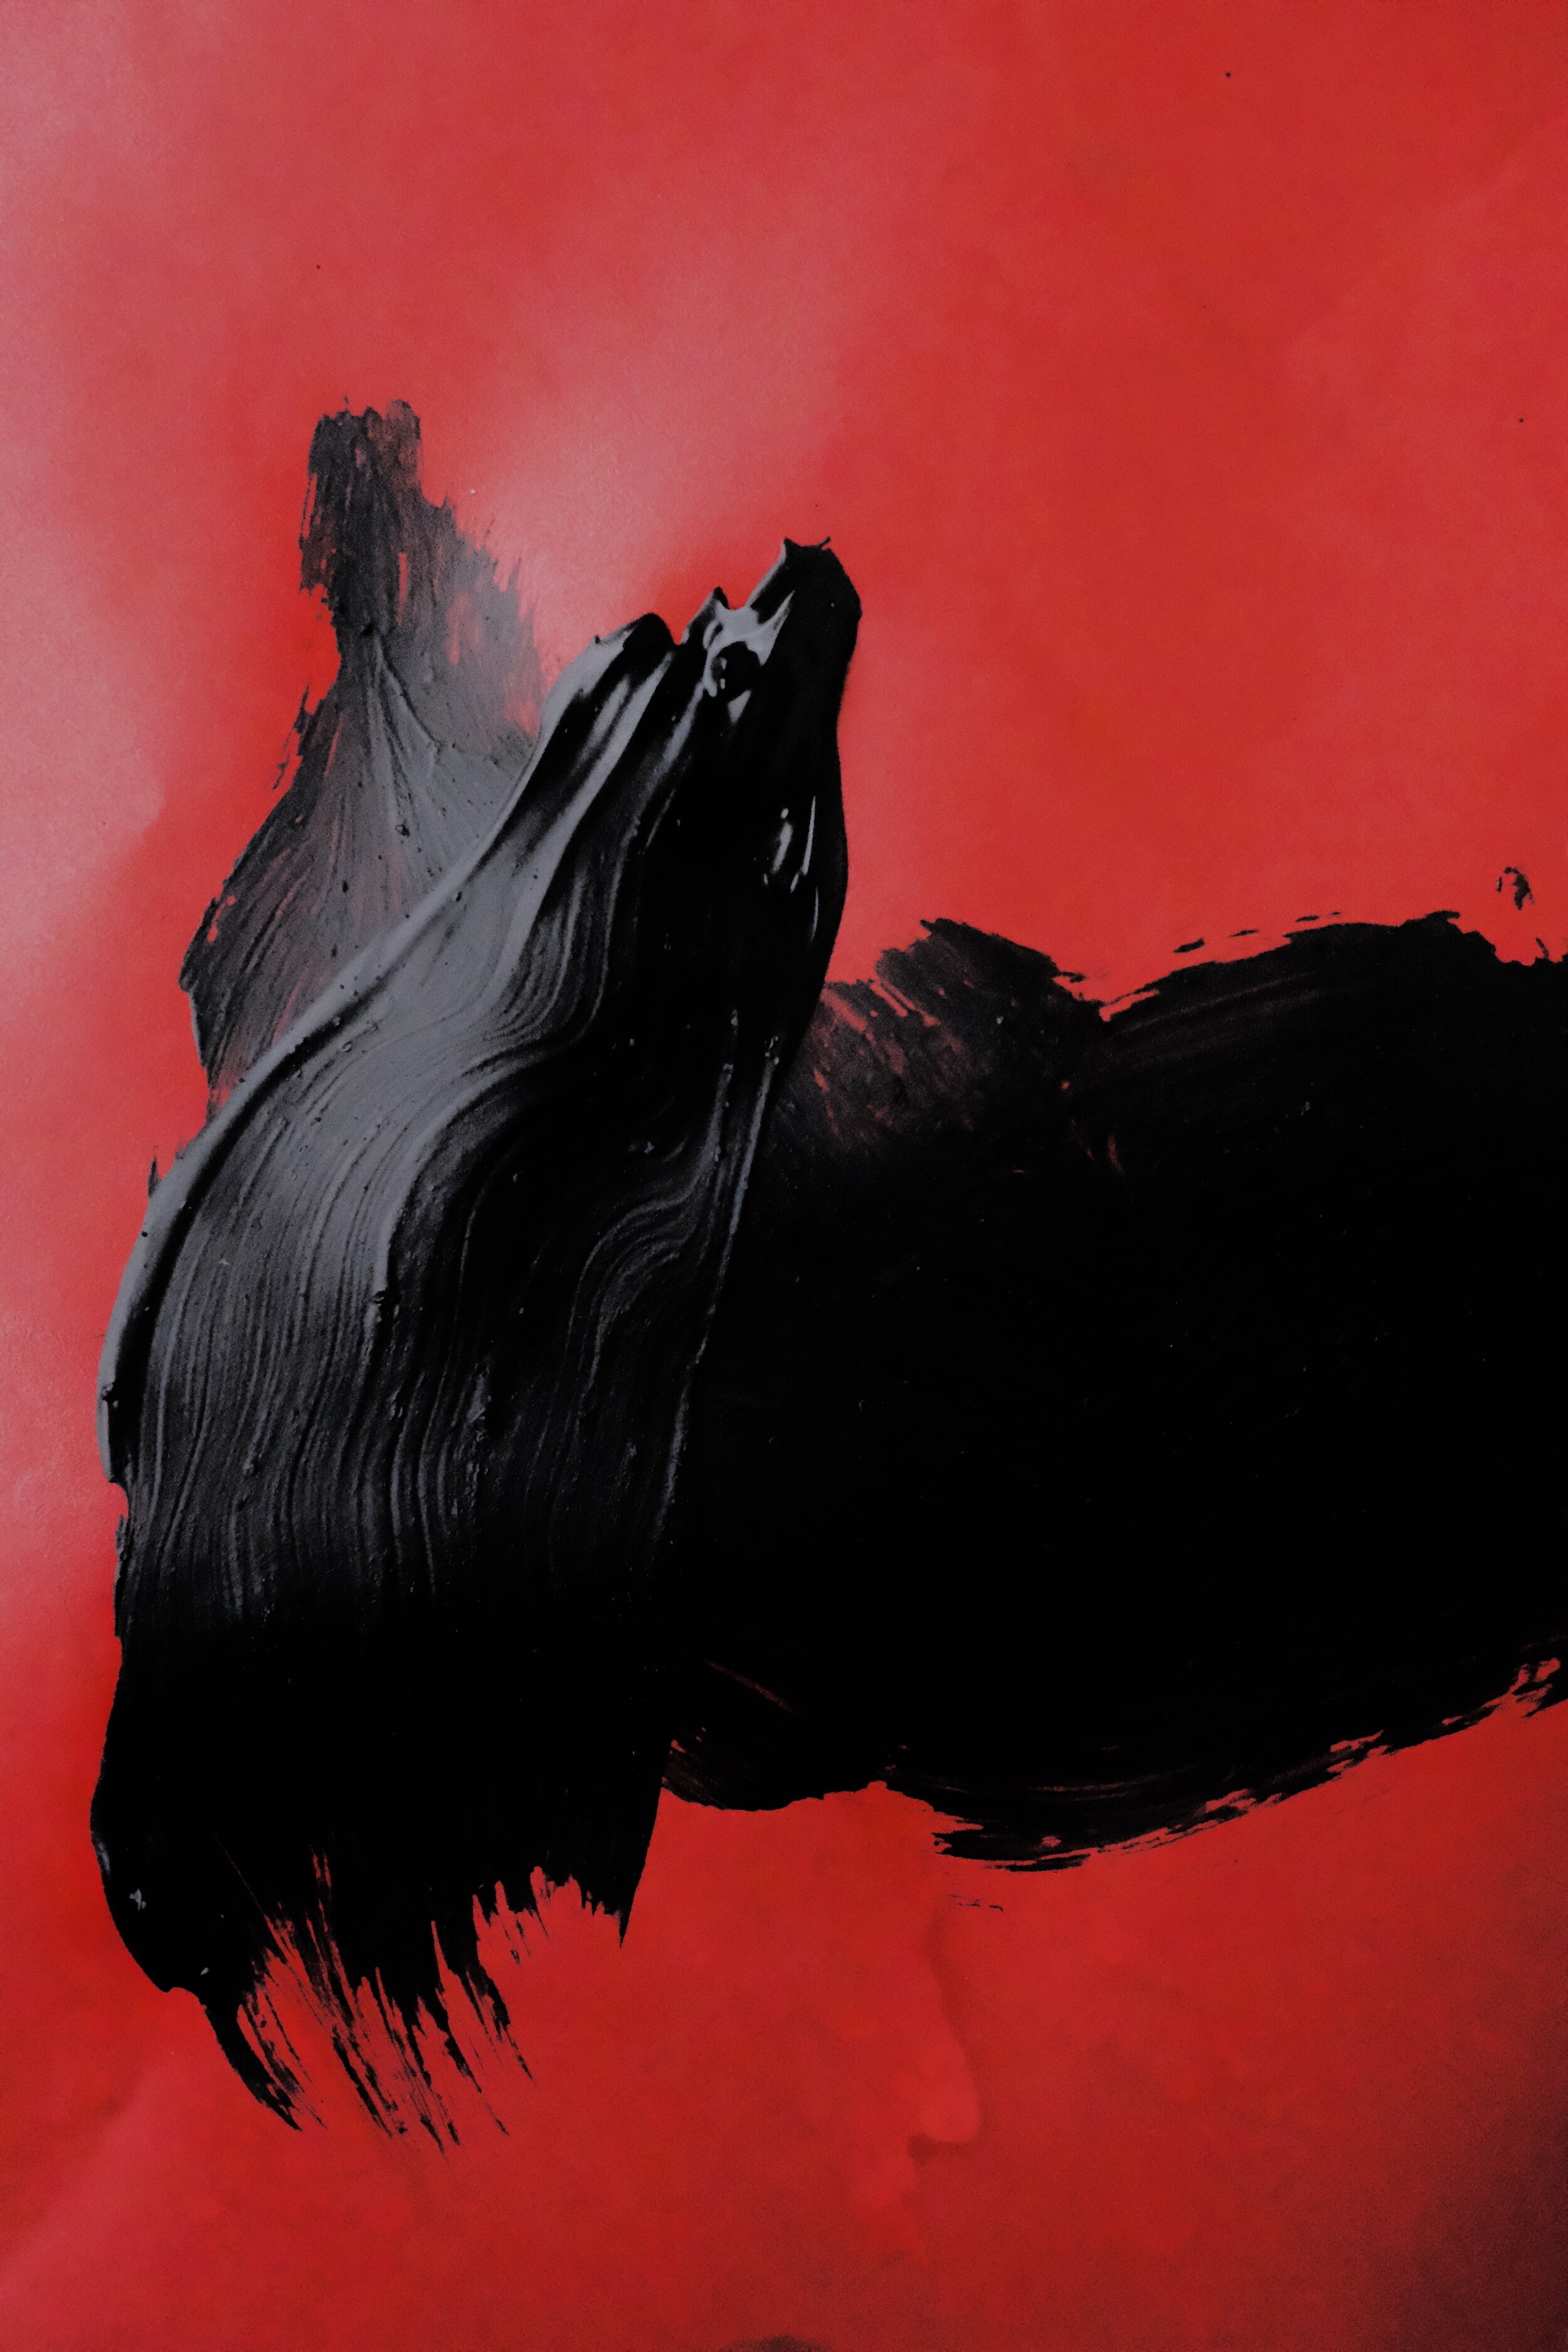 Diptych (1), The Mountain Stream, acrylic, acrylic spray, vinyl glue, charcoal on canvas, 2020